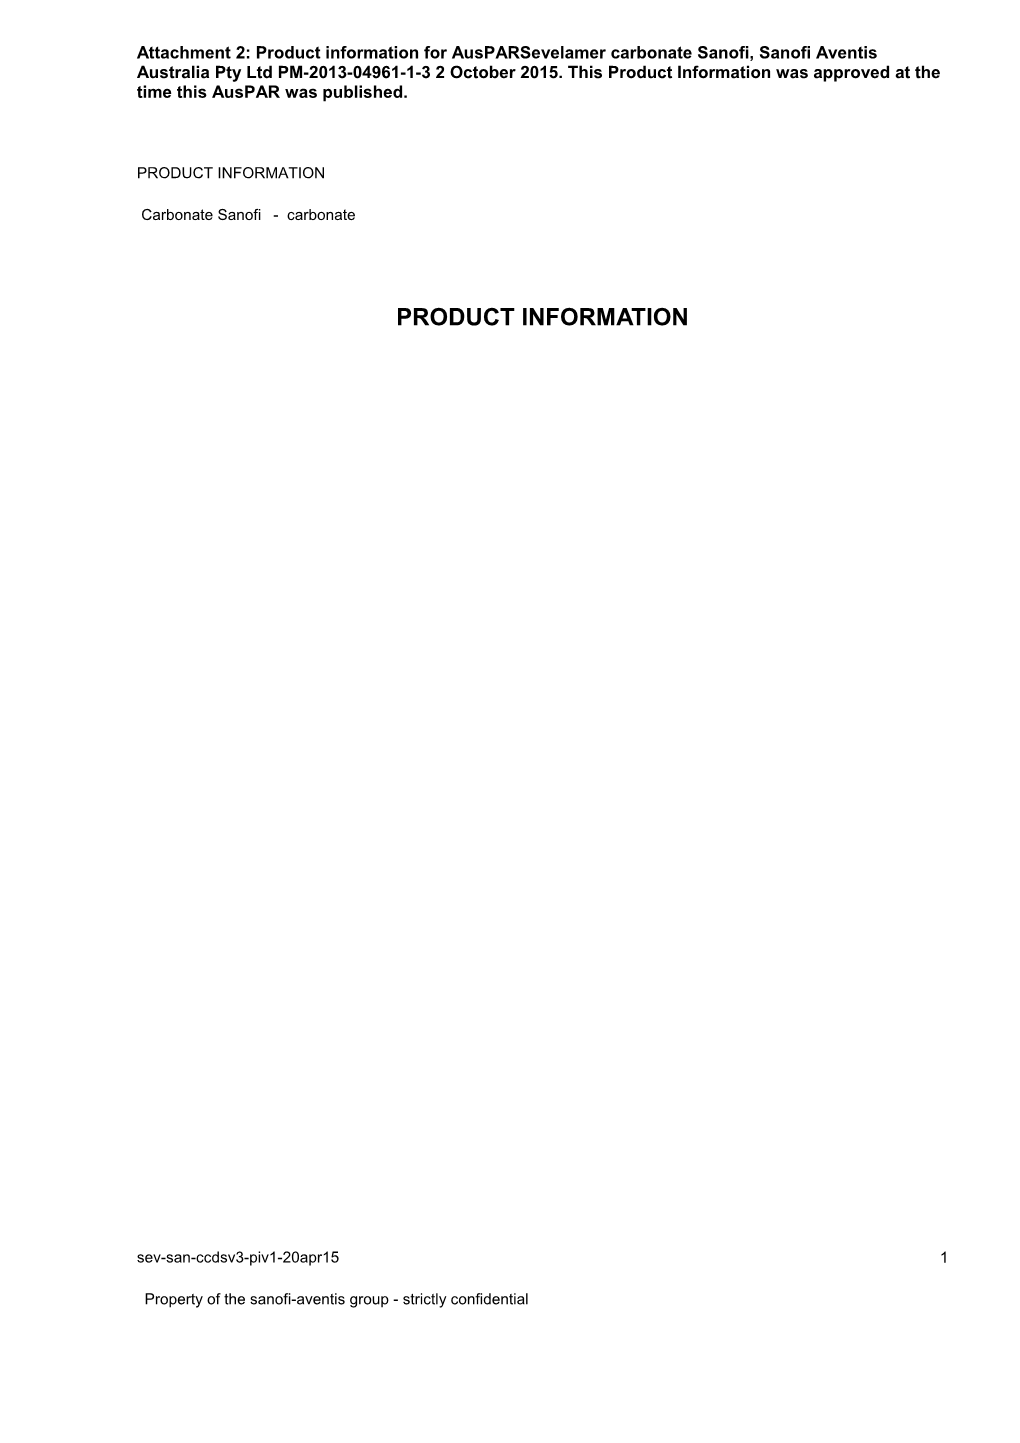 Auspar Attachment 2: Product Information for Sevelamer Carbonate Sanofi